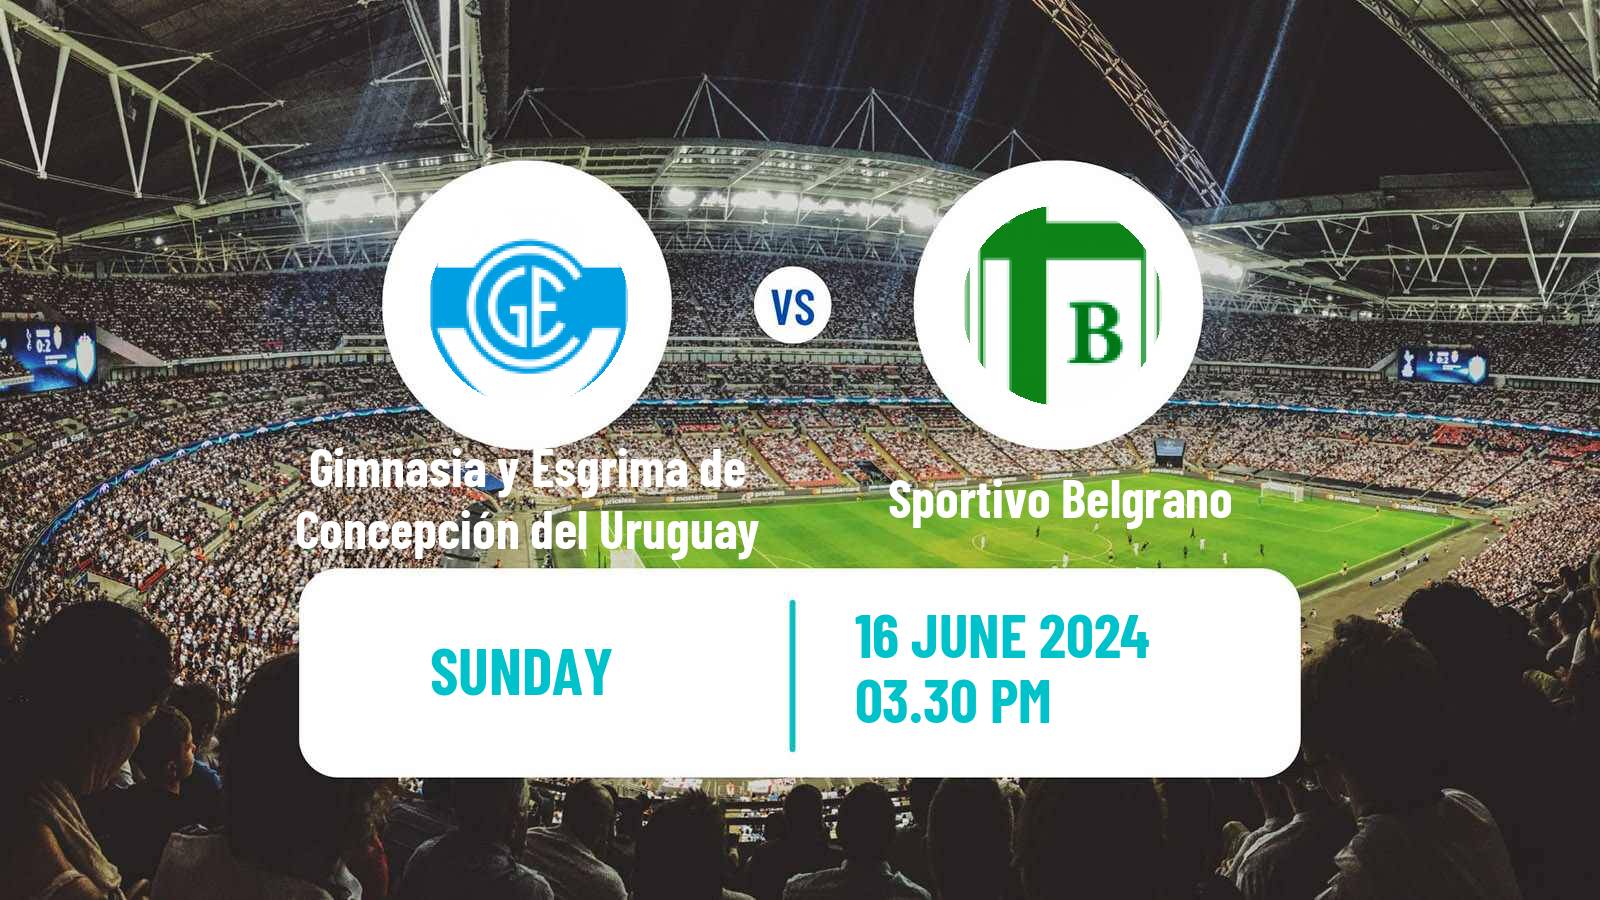 Soccer Argentinian Torneo Federal Gimnasia y Esgrima de Concepción del Uruguay - Sportivo Belgrano